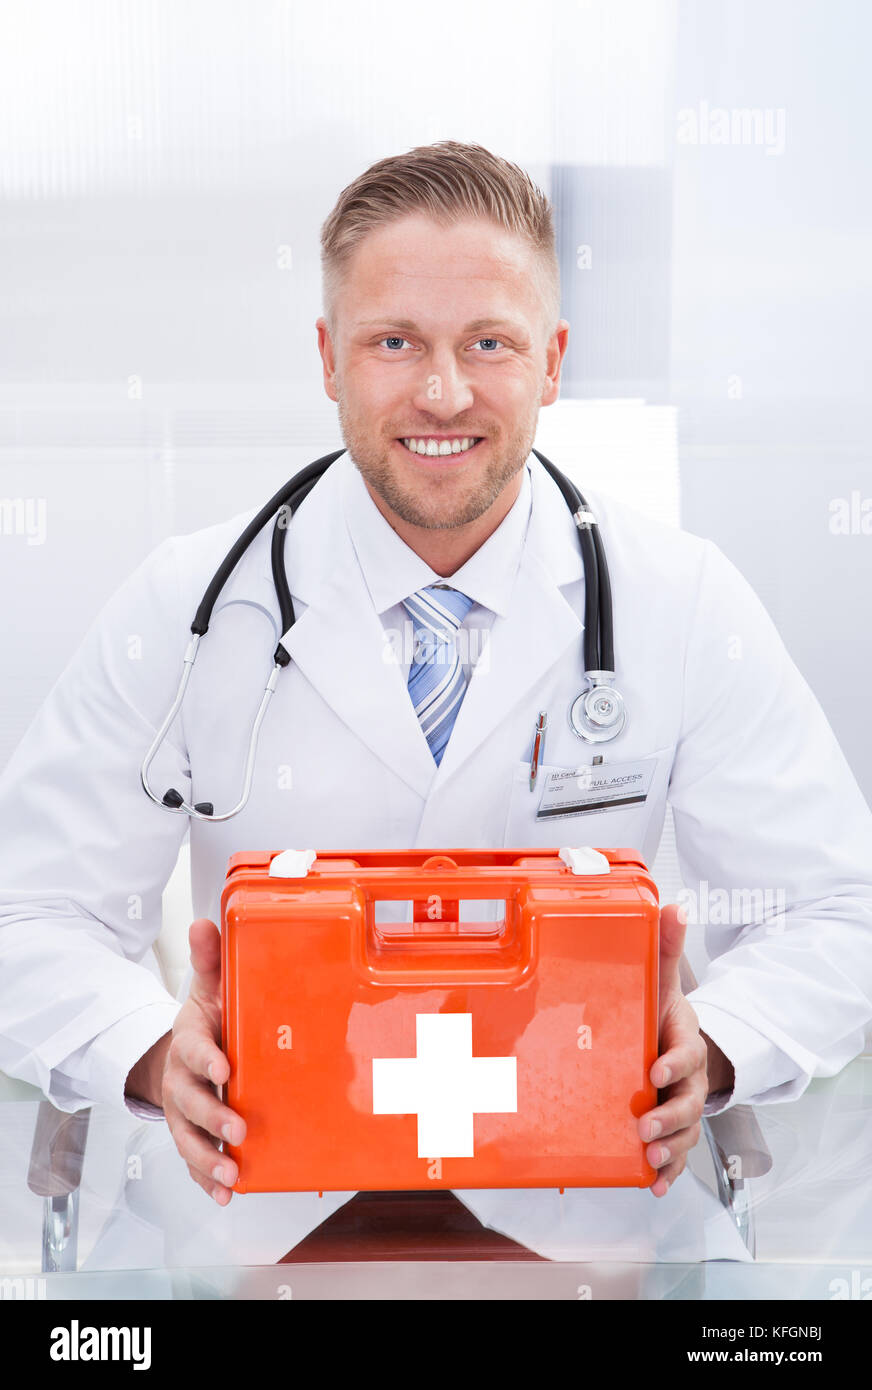 Smiling doctor ou du personnel paramédical dans un sarrau blanc avec un stéthoscope autour du cou, tenant une boîte rouge contenant une trousse de premiers soins Banque D'Images